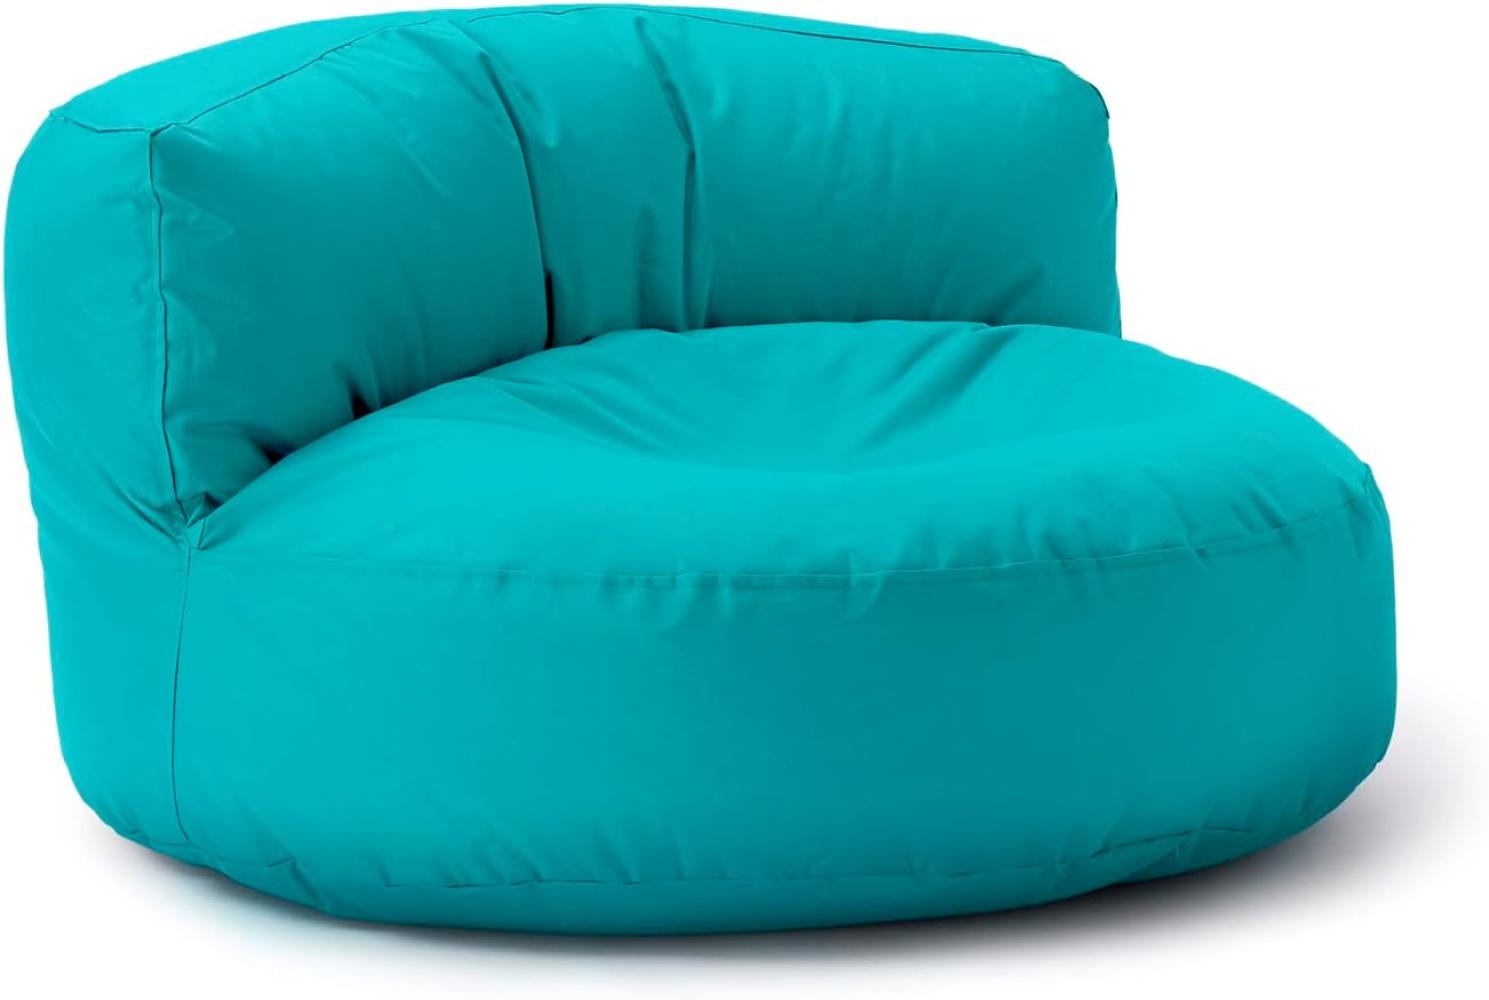 Lumaland Outdoor Sitzsack-Lounge, Rundes Sitzsack-Sofa für draußen, 320l Füllung, 90 x 50 cm, Aquamarin Bild 1